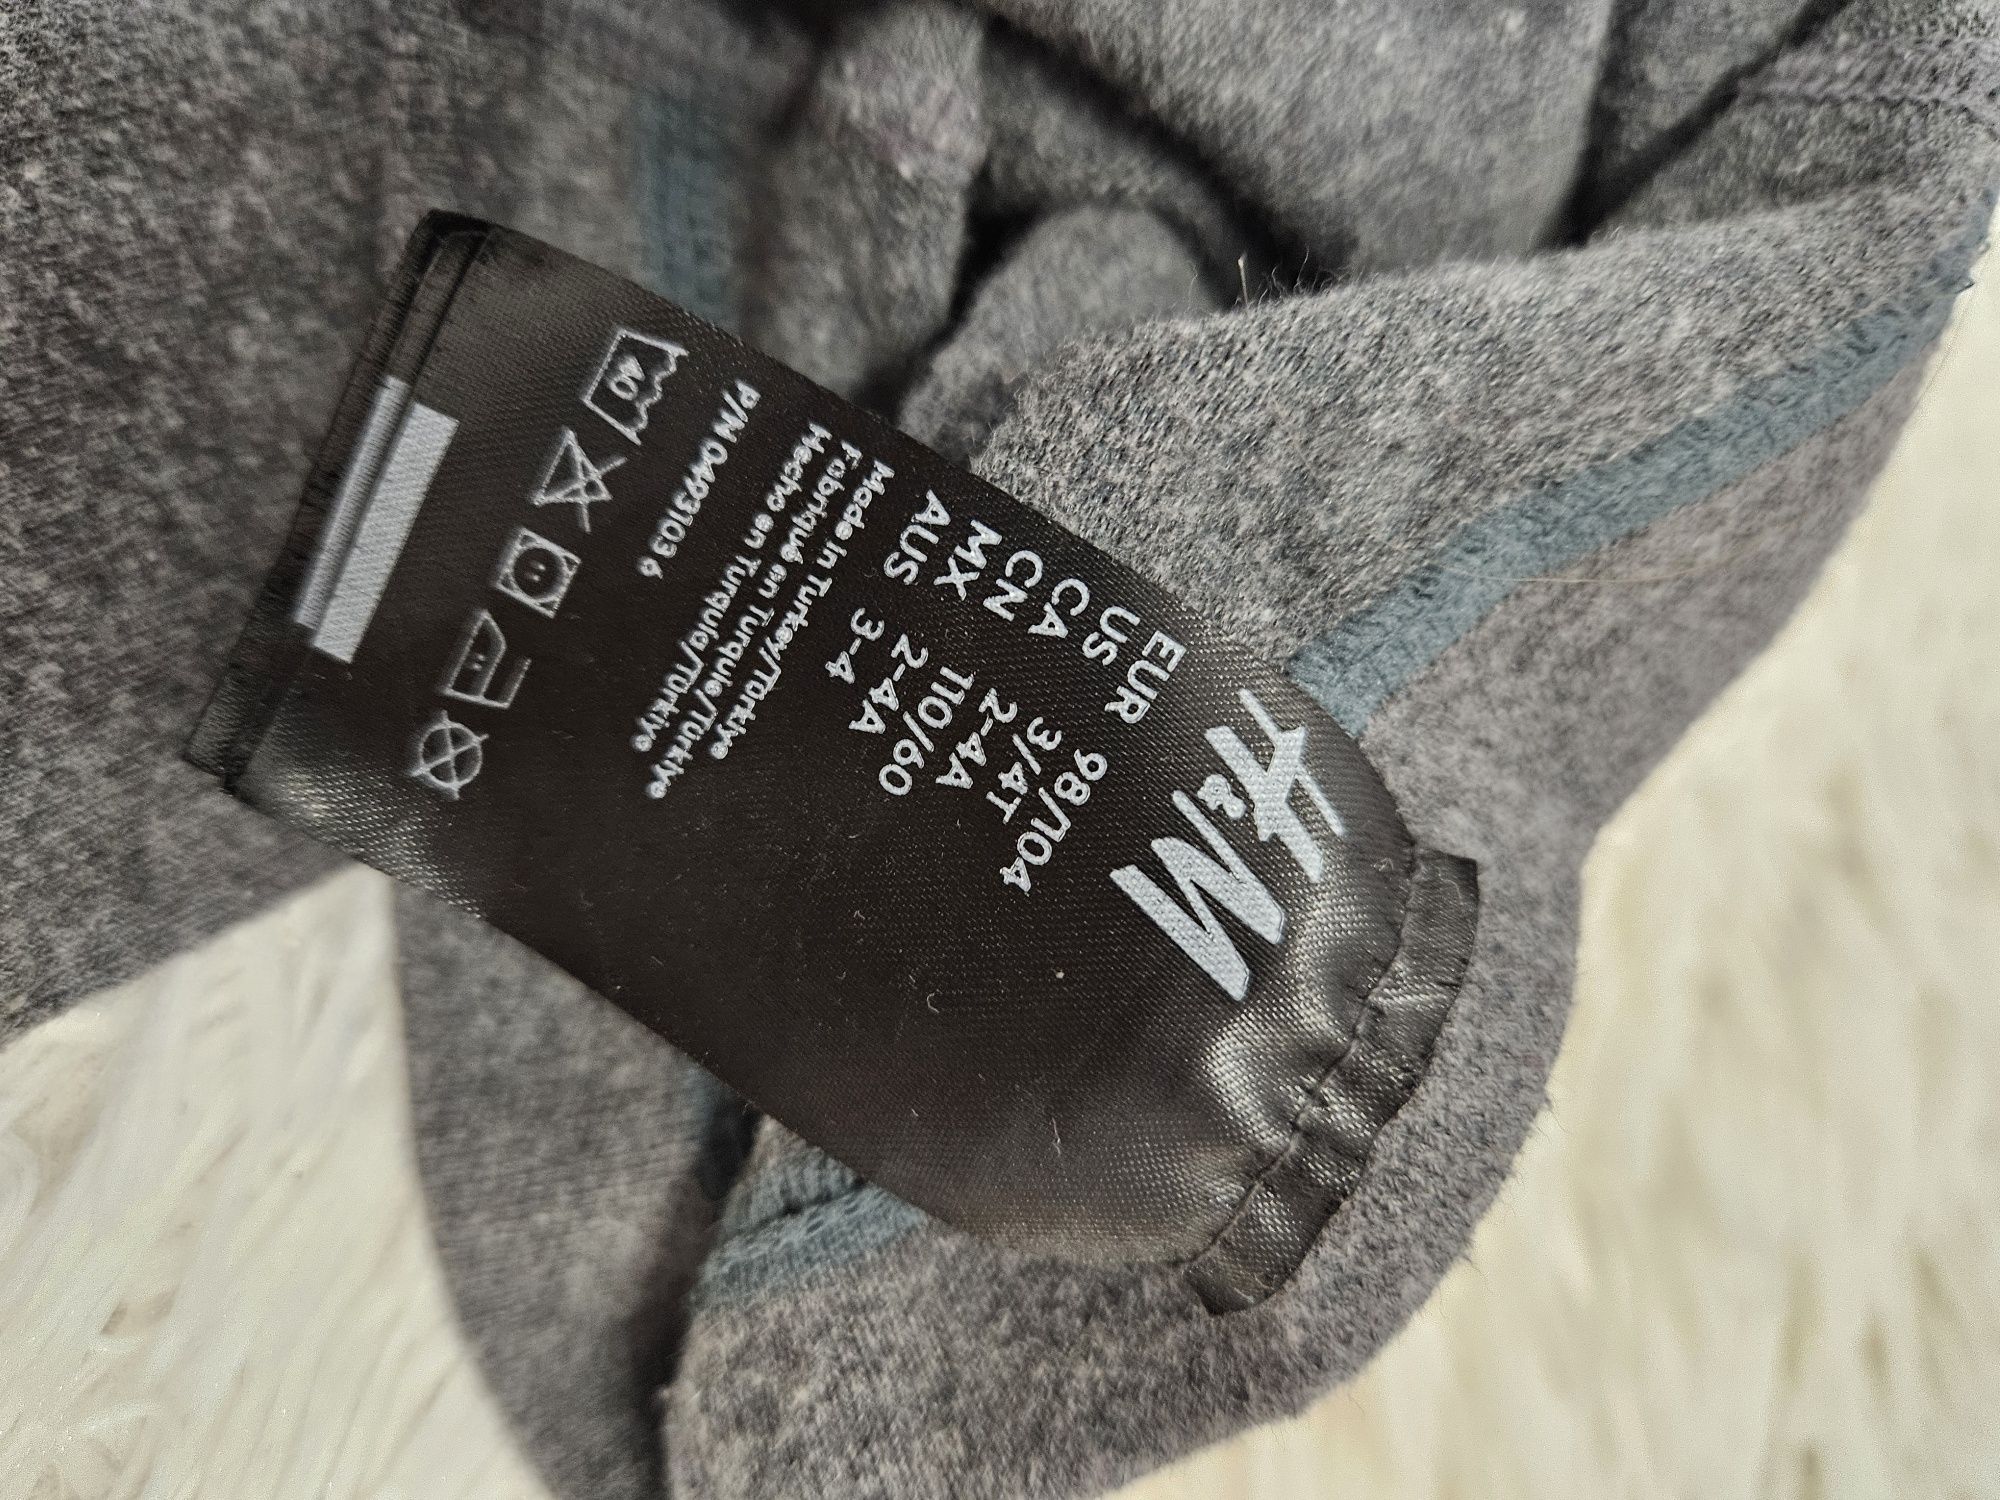 Ciorapi cu chilot 
H&M
Marimea 98/104
Stare foarte bună 
15 lei